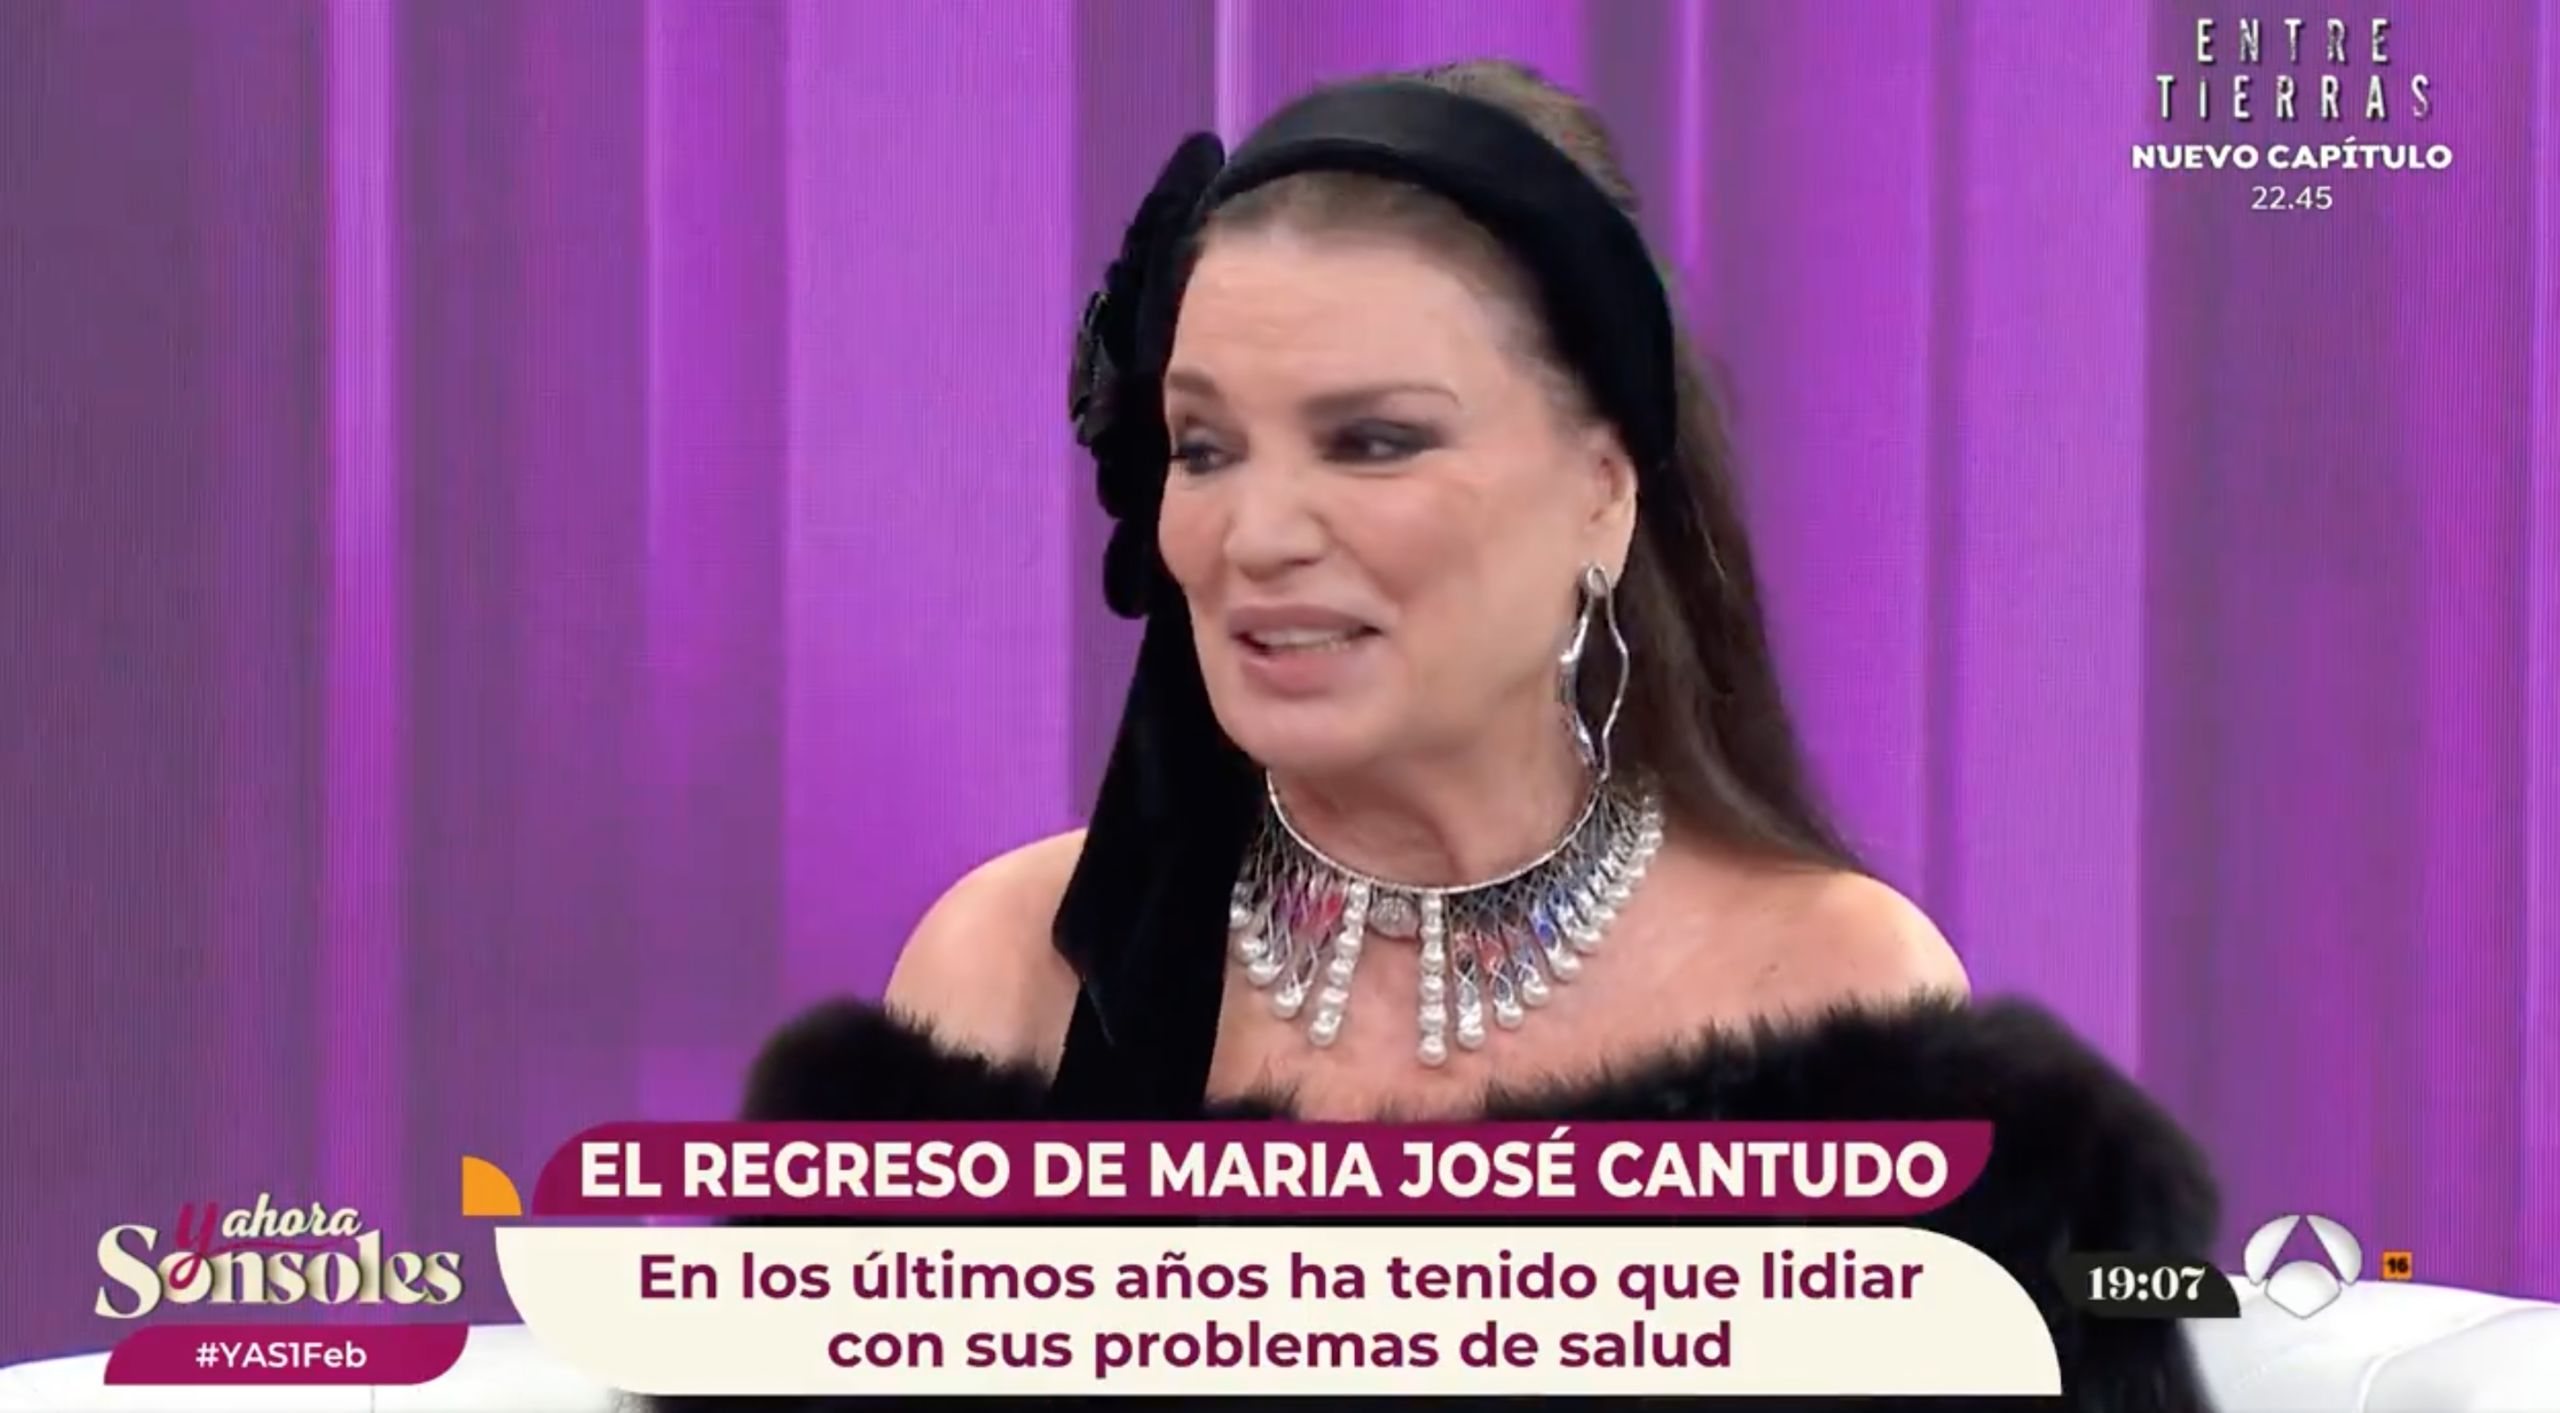 María José Cantudo desvela sus gravísimos problemas de salud: "Me dejó paralizado el cuerpo"